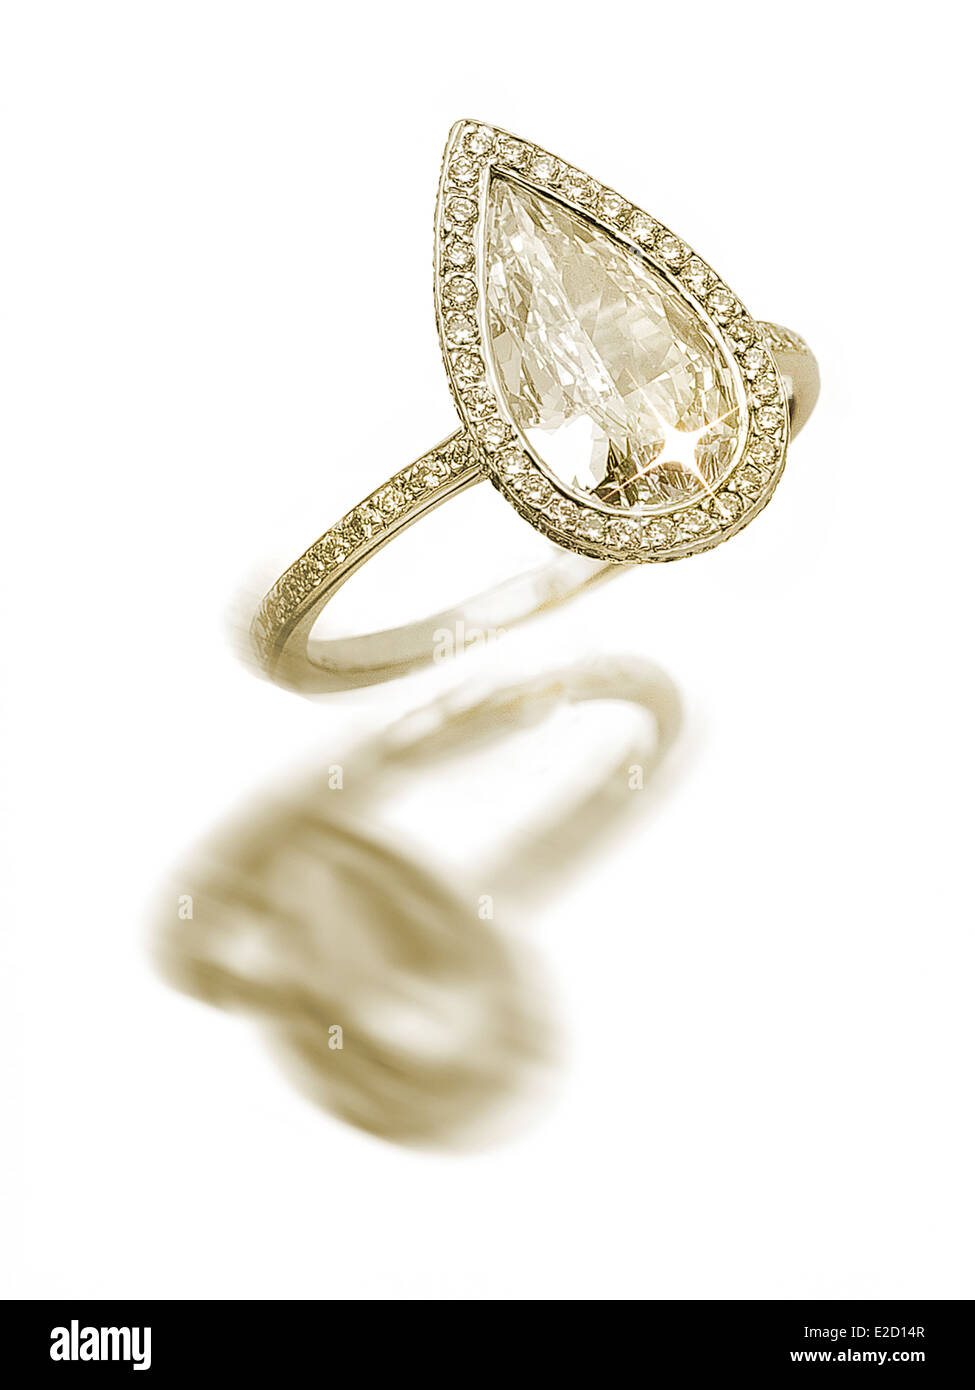 Diamond ring on white background Stock Photo